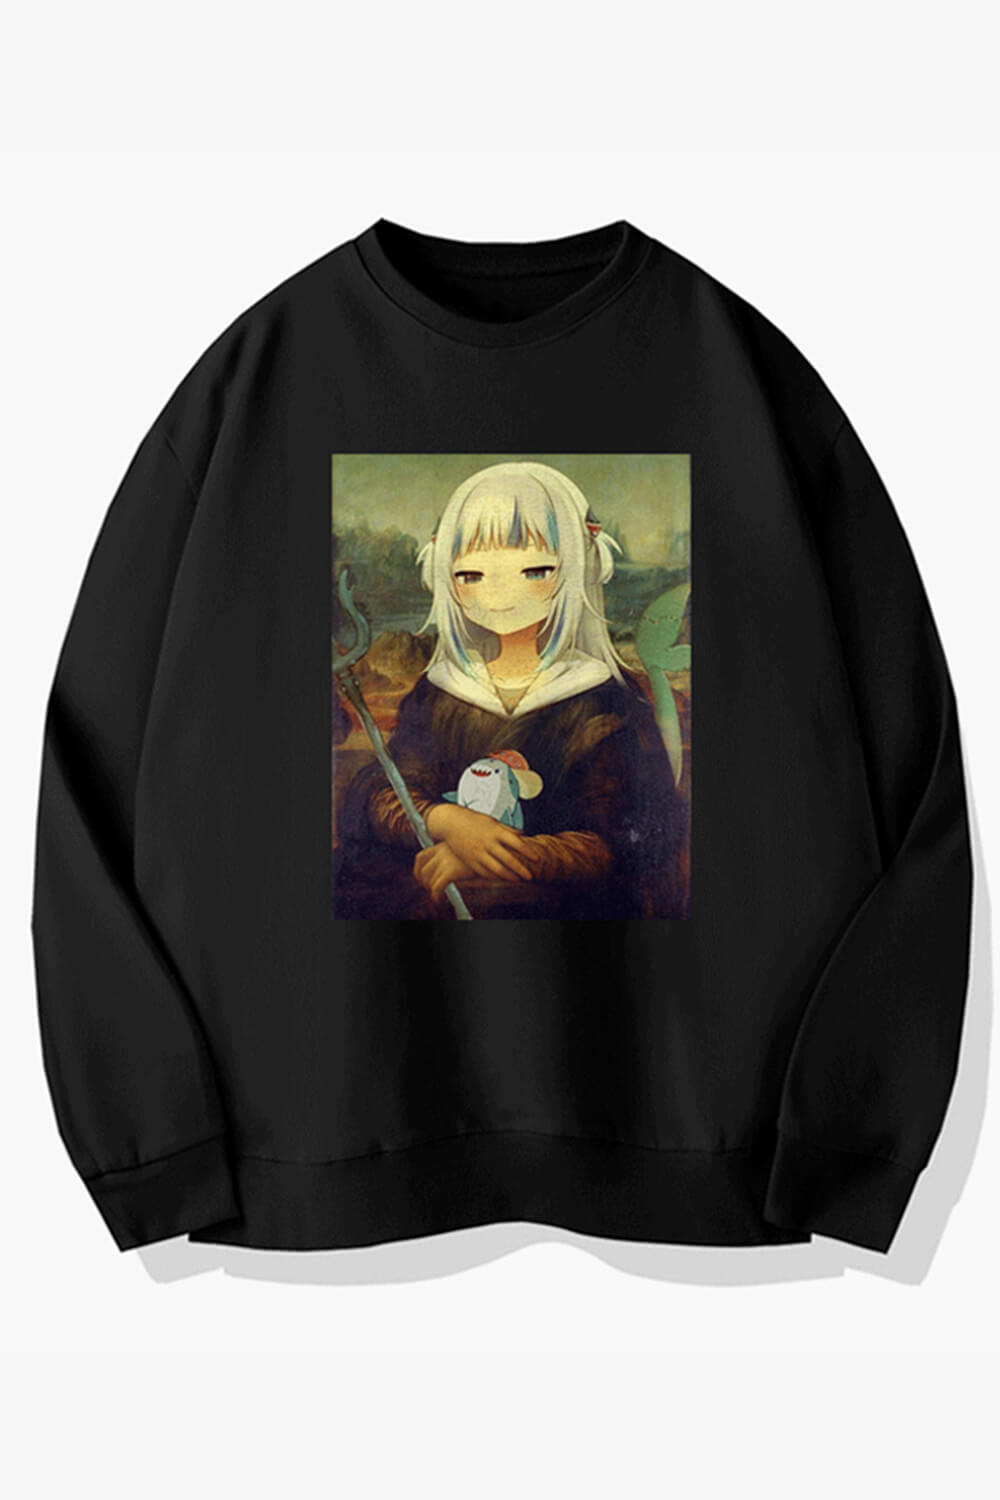 Anime Girl Mona Lisa Animecore Sweatshirt